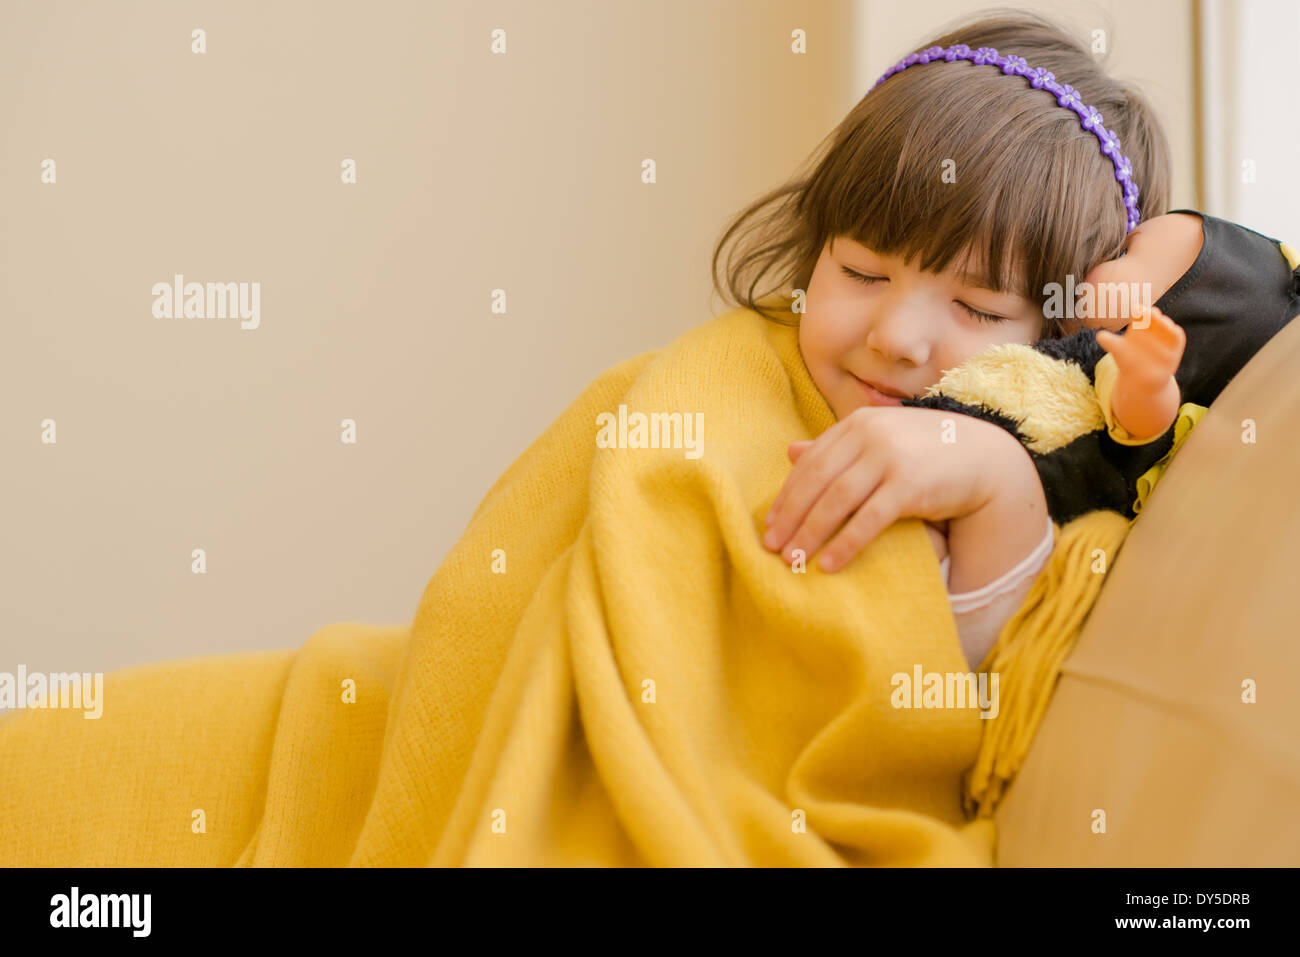 Young girl lying on sofa pretending to sleep Stock Photo